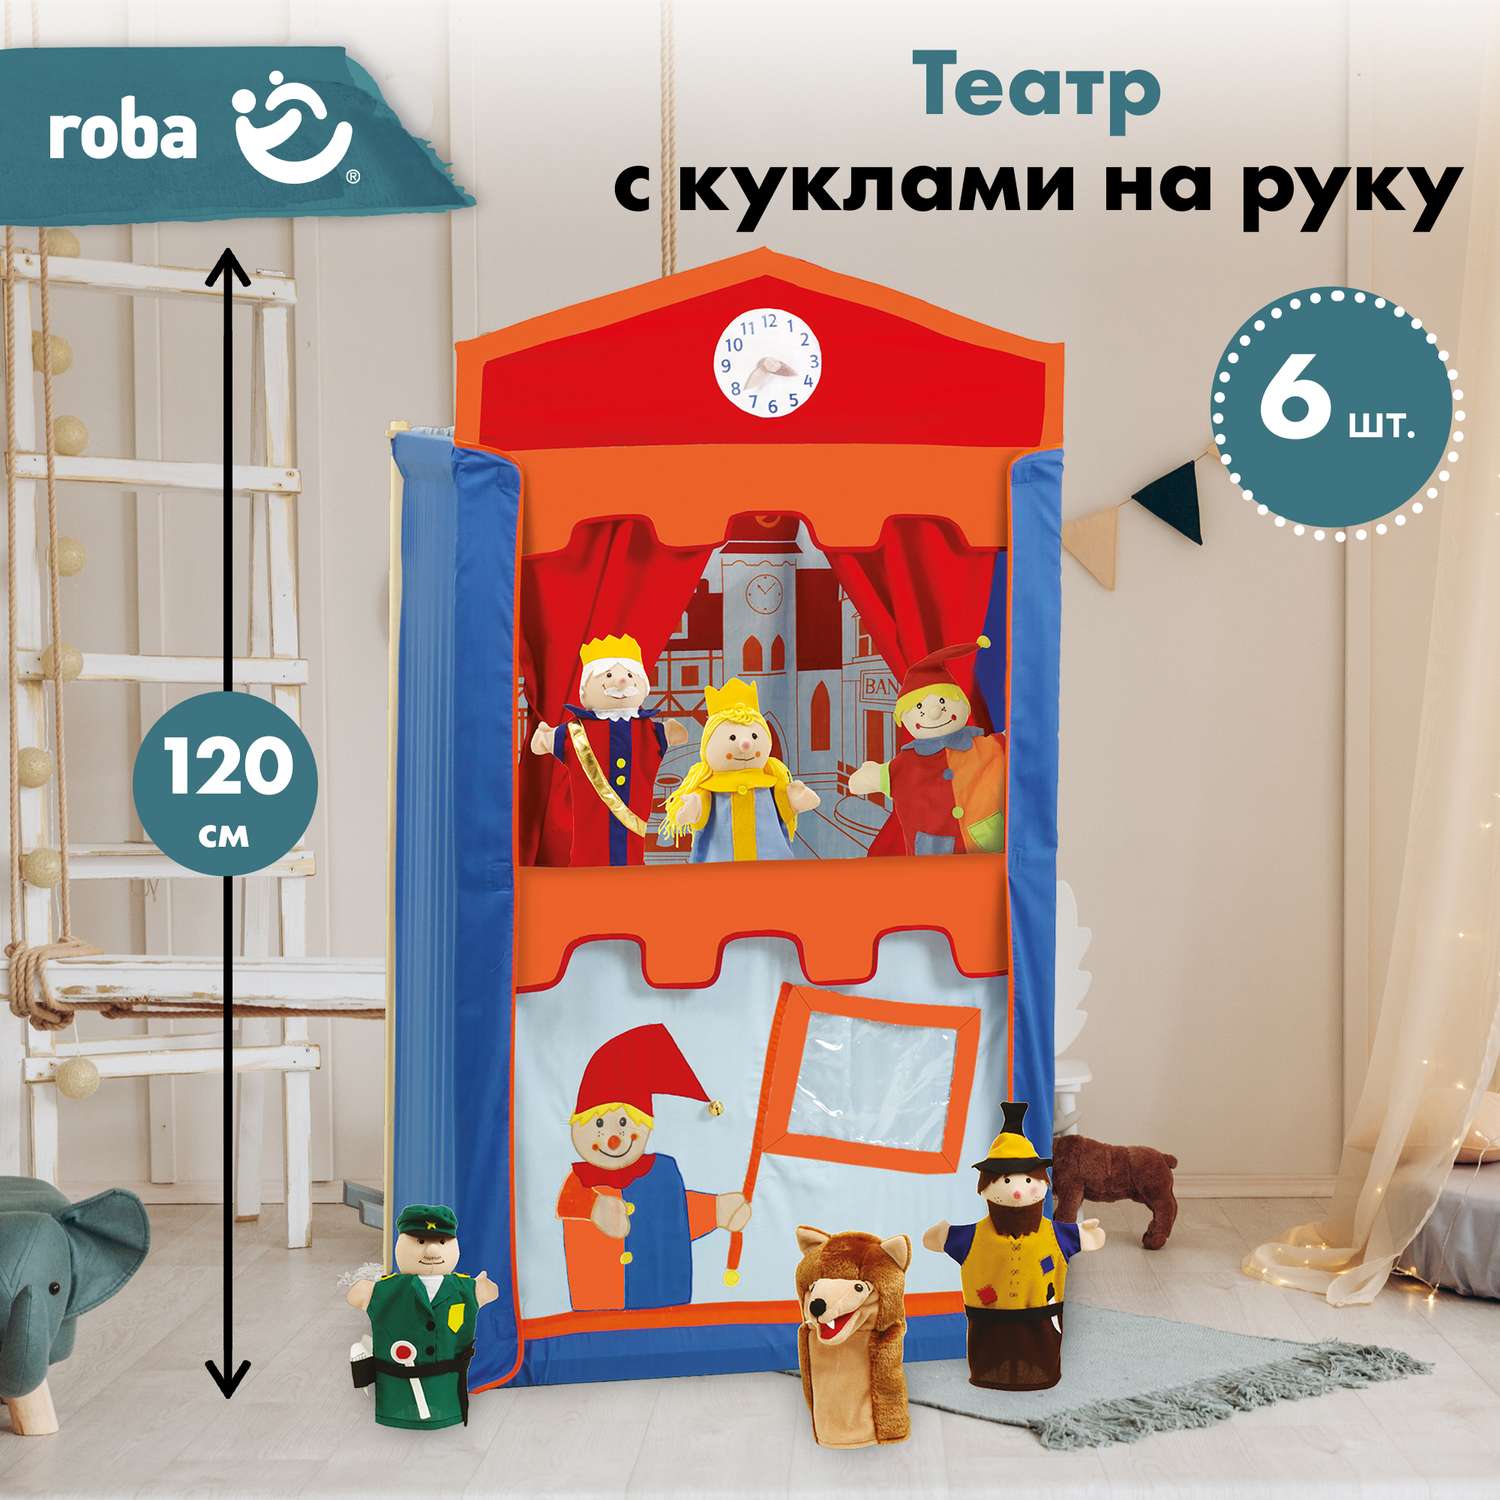 Кукольный театр Roba детский игровой с перчаточными куклами 6 шт в комплекте - фото 1